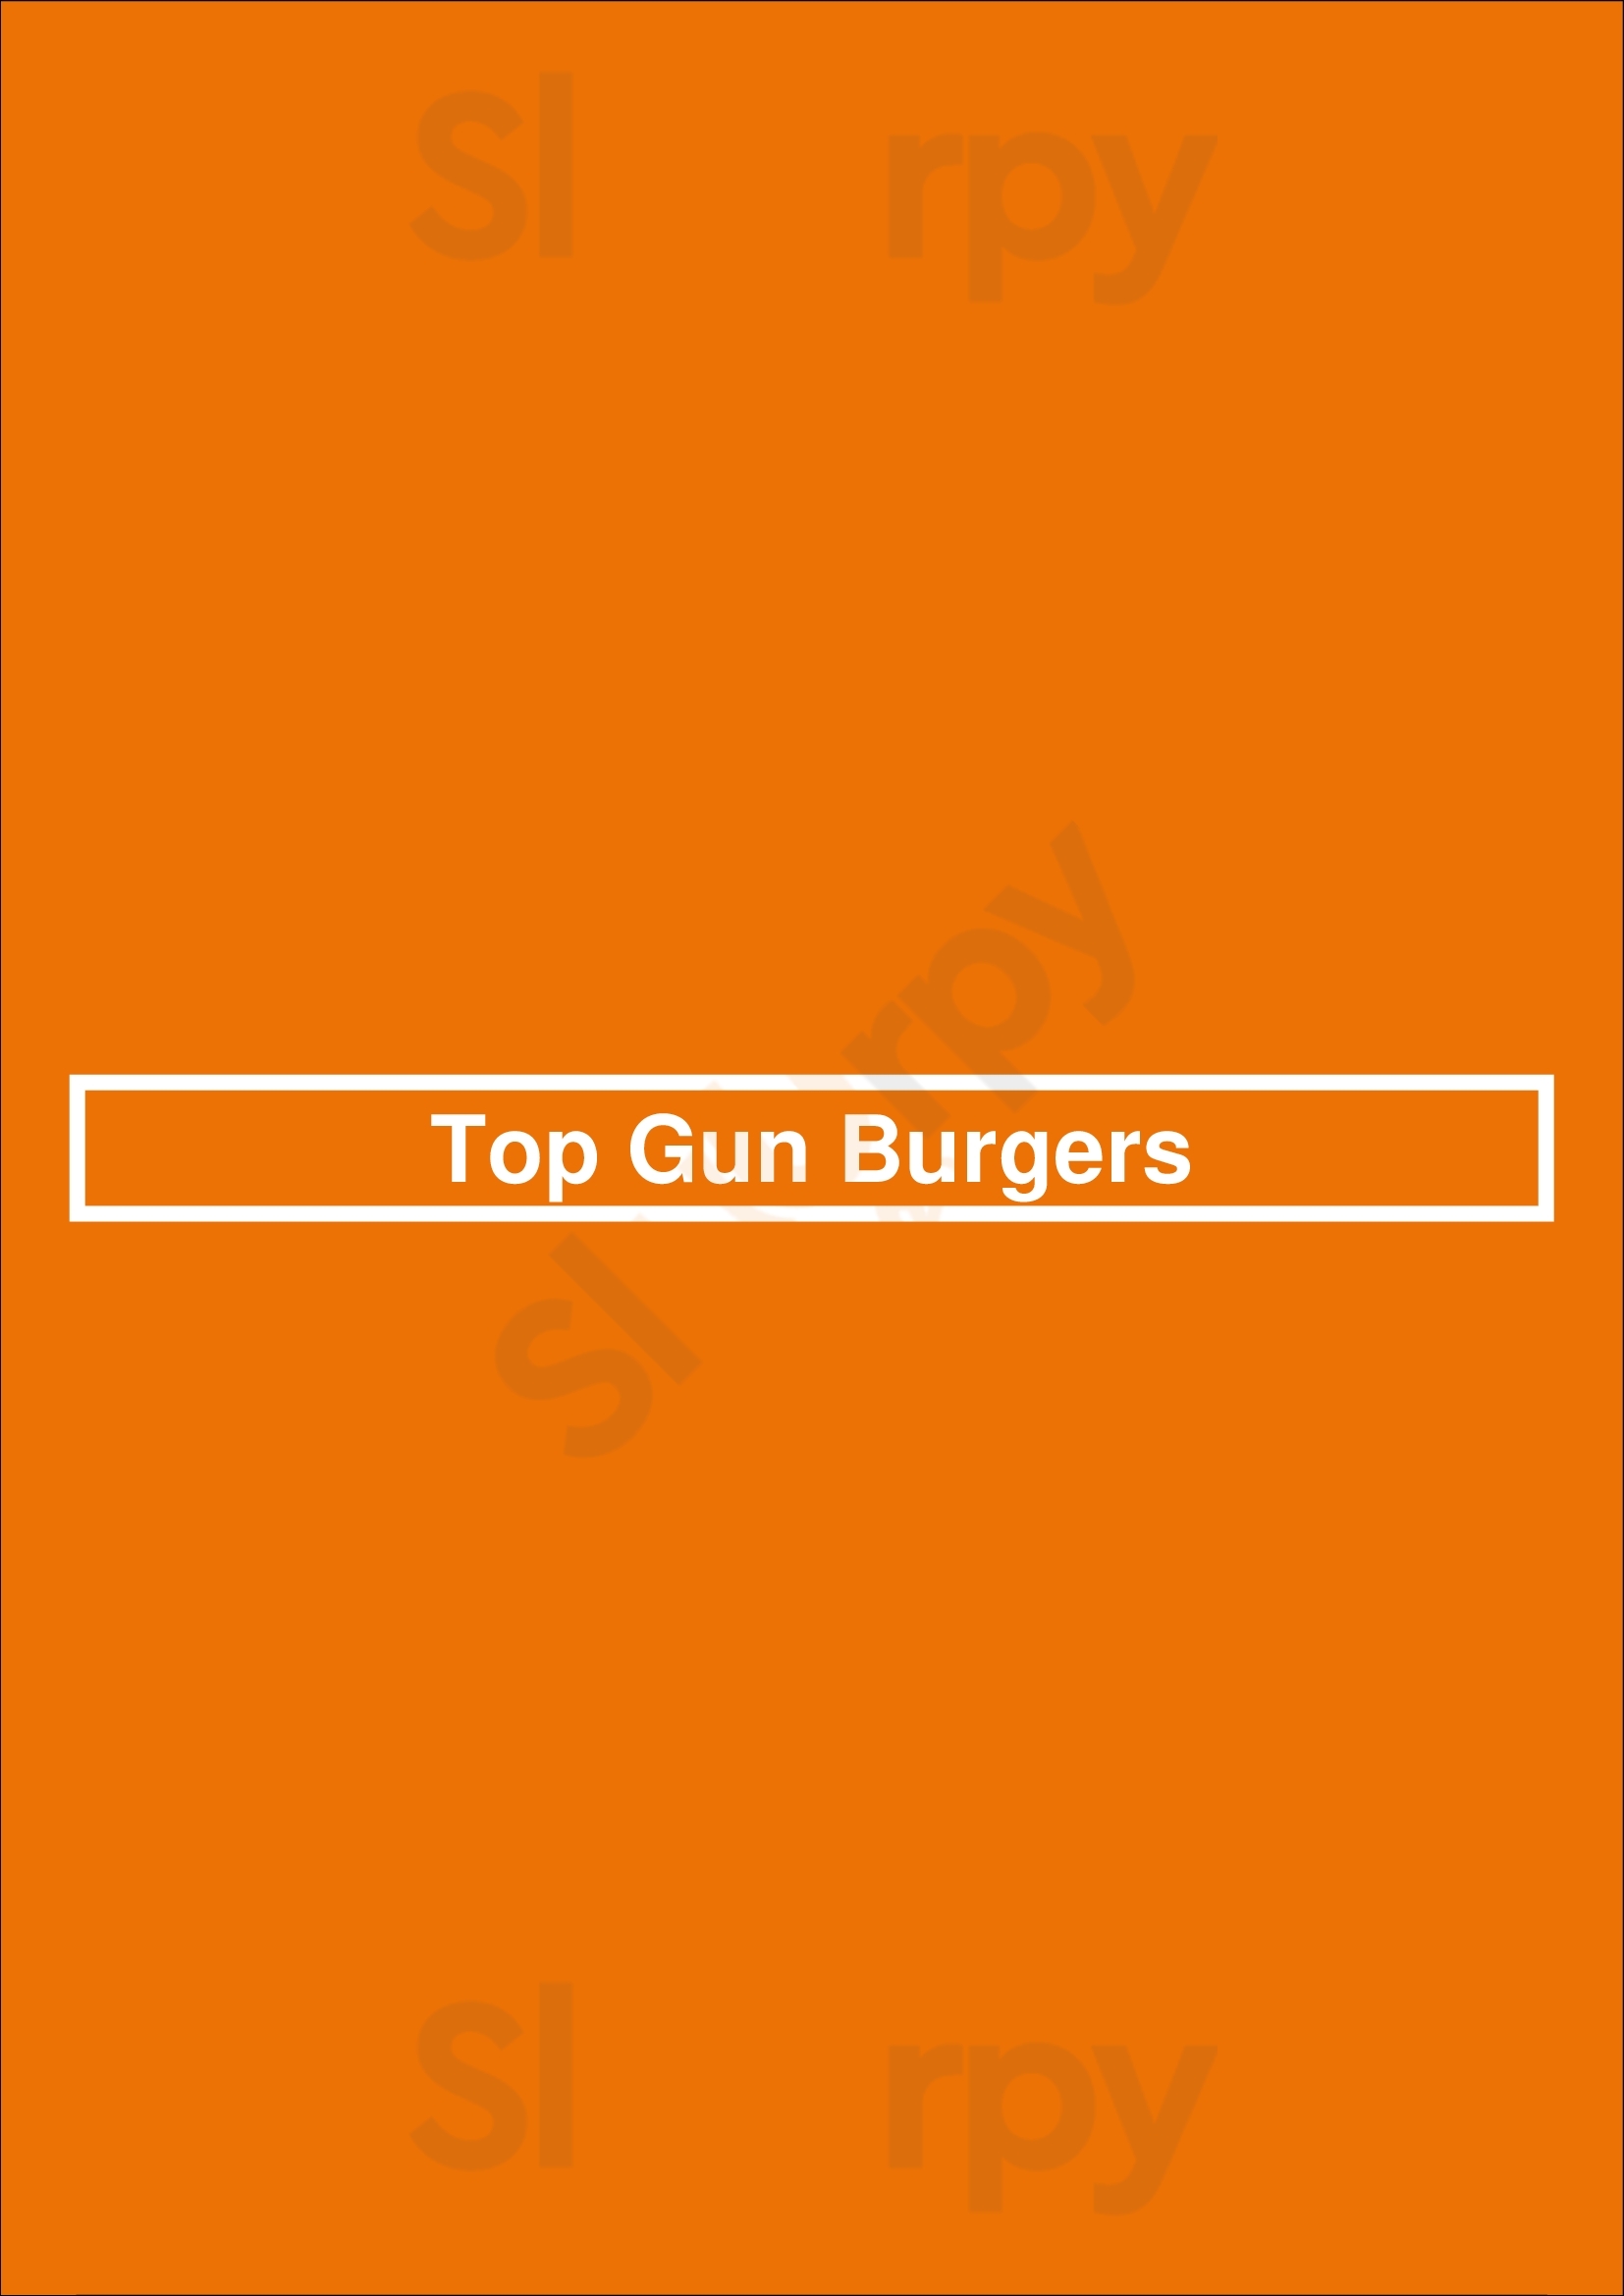 Top Gun Burgers London Menu - 1